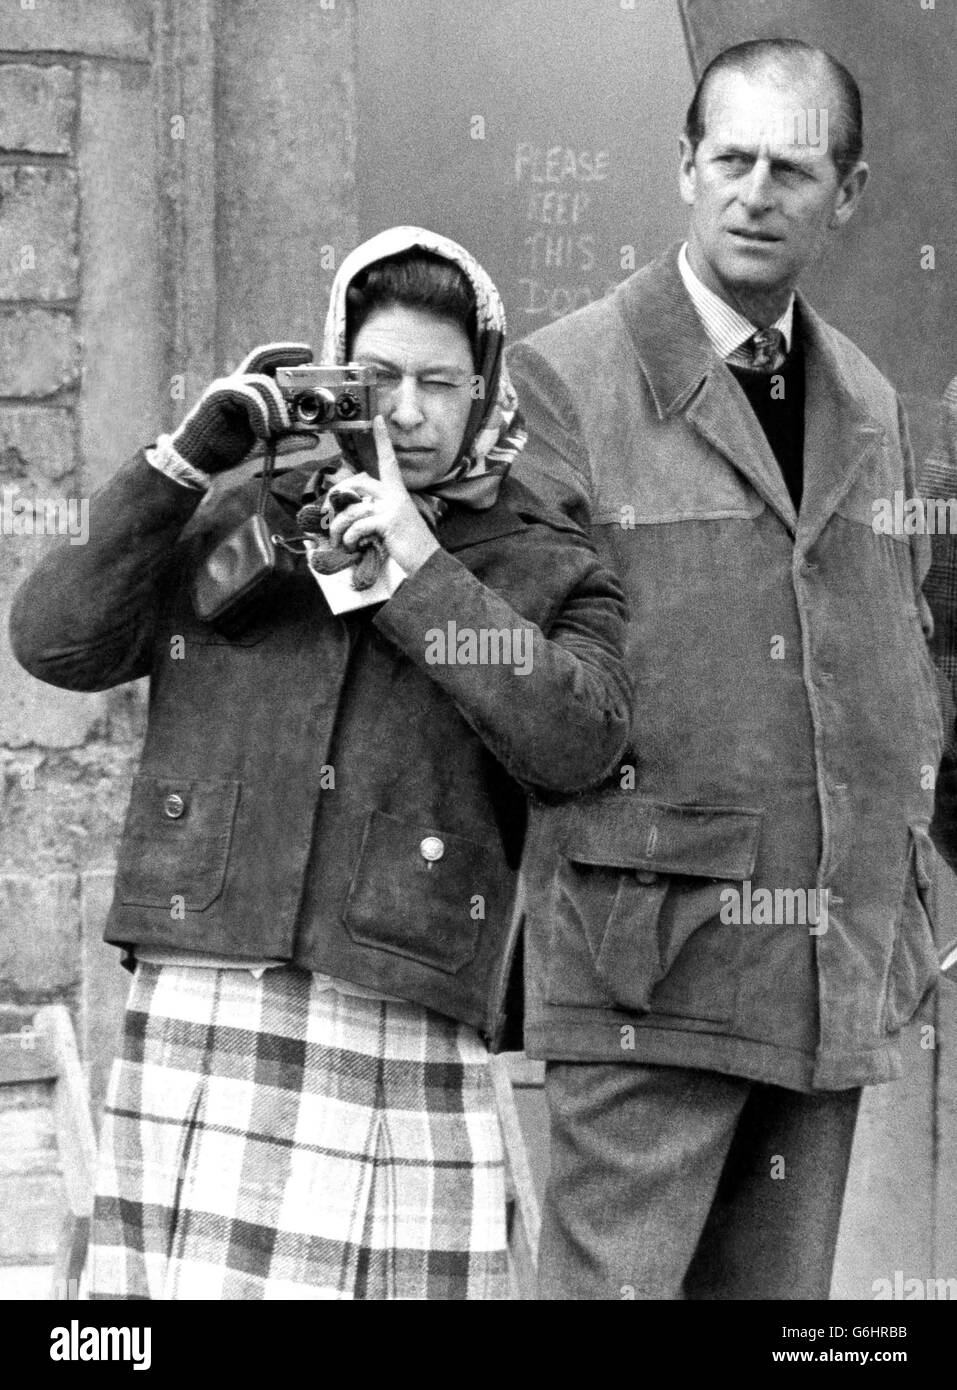 La Reine, surveillée par le duc d'Édimbourg, utilise un appareil photo plaqué or pour photographier son cheval columbus lors de l'inspection vétérinaire le premier jour des épreuves de badminton de 1974. Banque D'Images